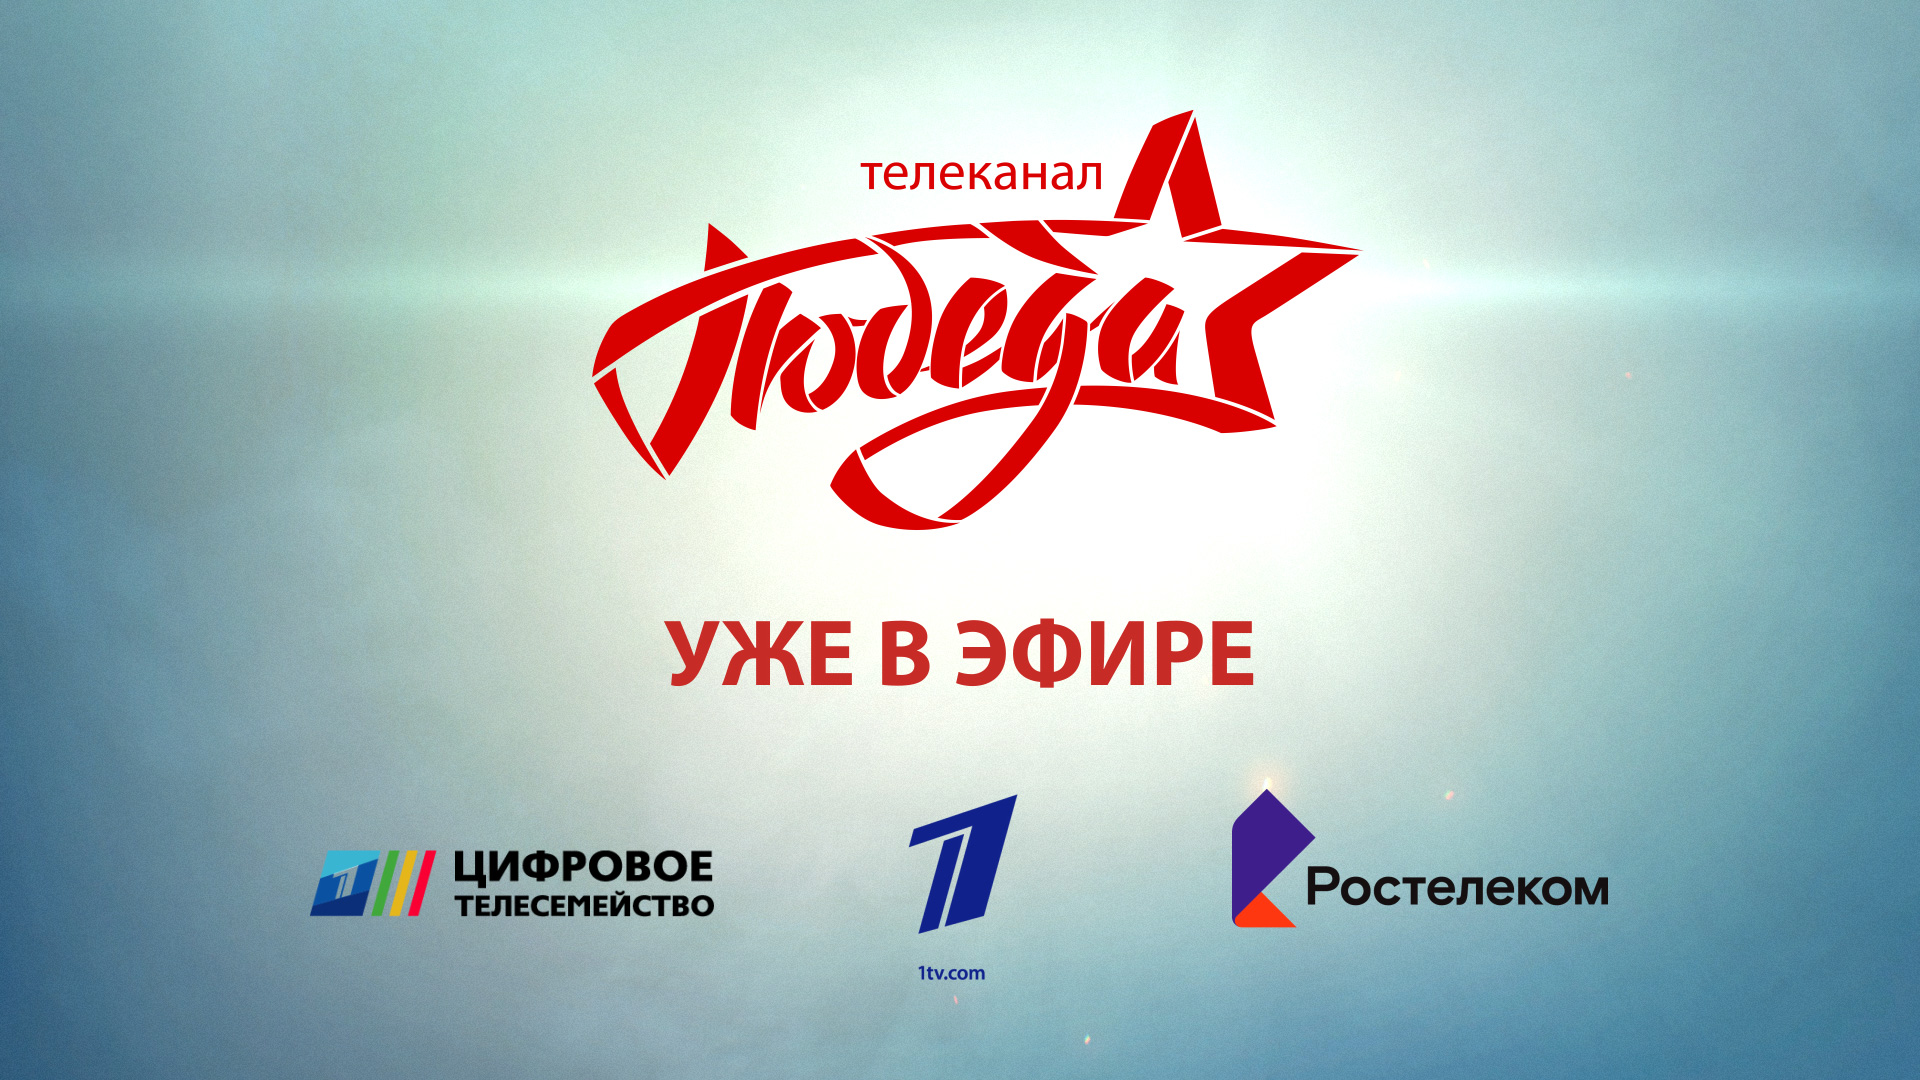 Первым телеканал «ПОБЕДА» включил в свою ТВ-сеть «Ростелеком»